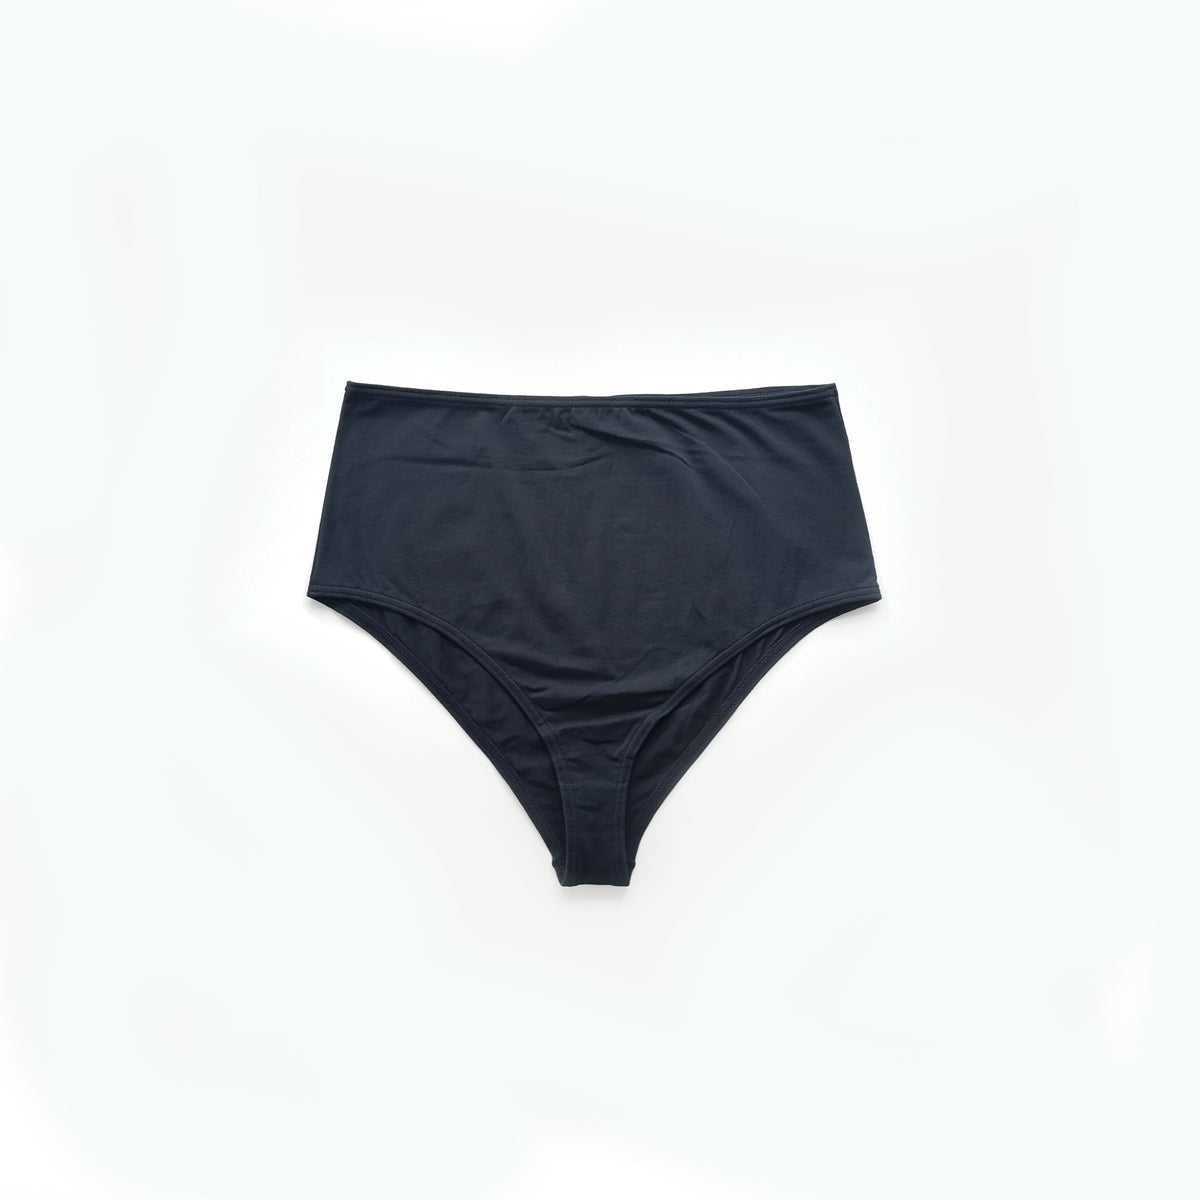 kalenji blue navy sports briefs underwear, Men's Fashion, Bottoms